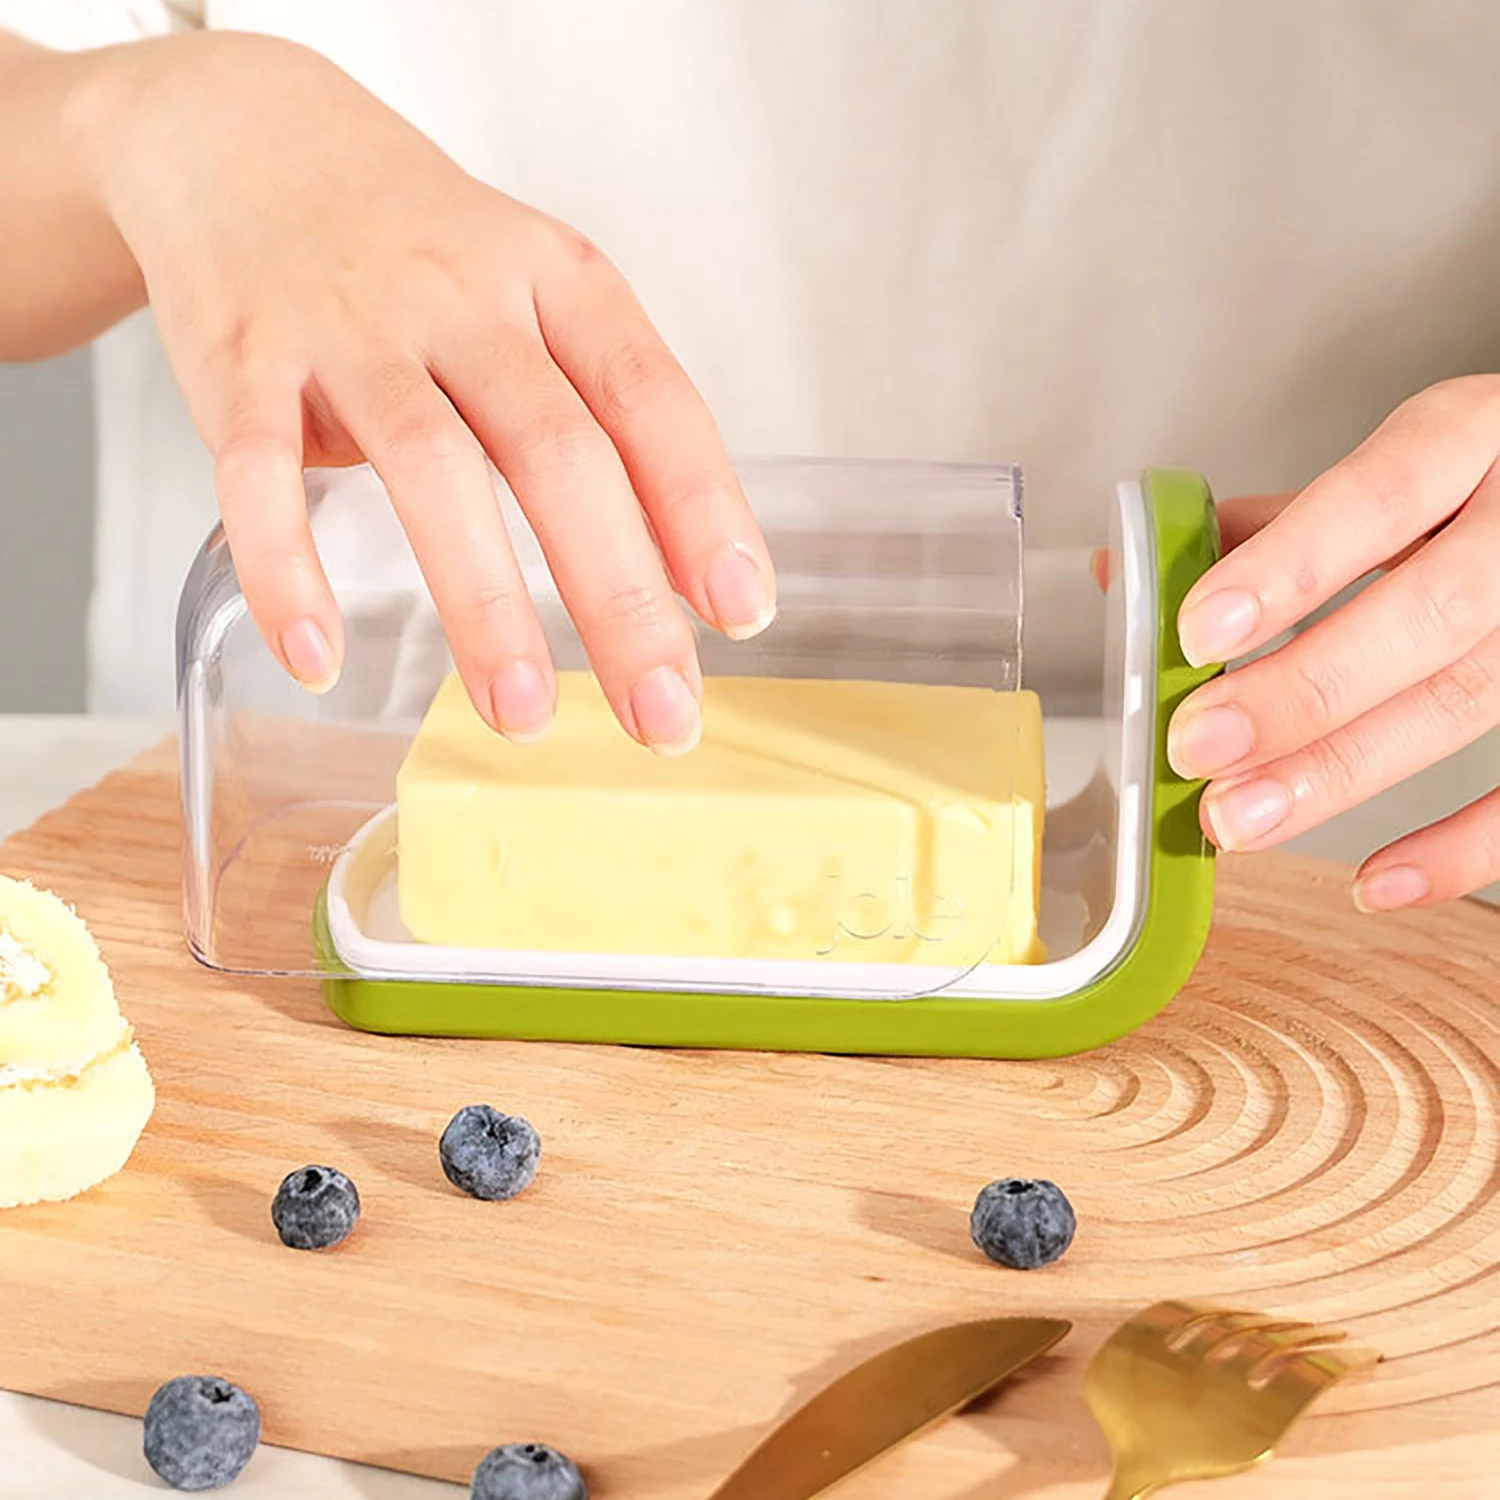 Joie máslo úložný skříňka kluzné kryt design máslo miska zapečetěné fresh-keeping úložný sýr jídlo grade textilie chladnička